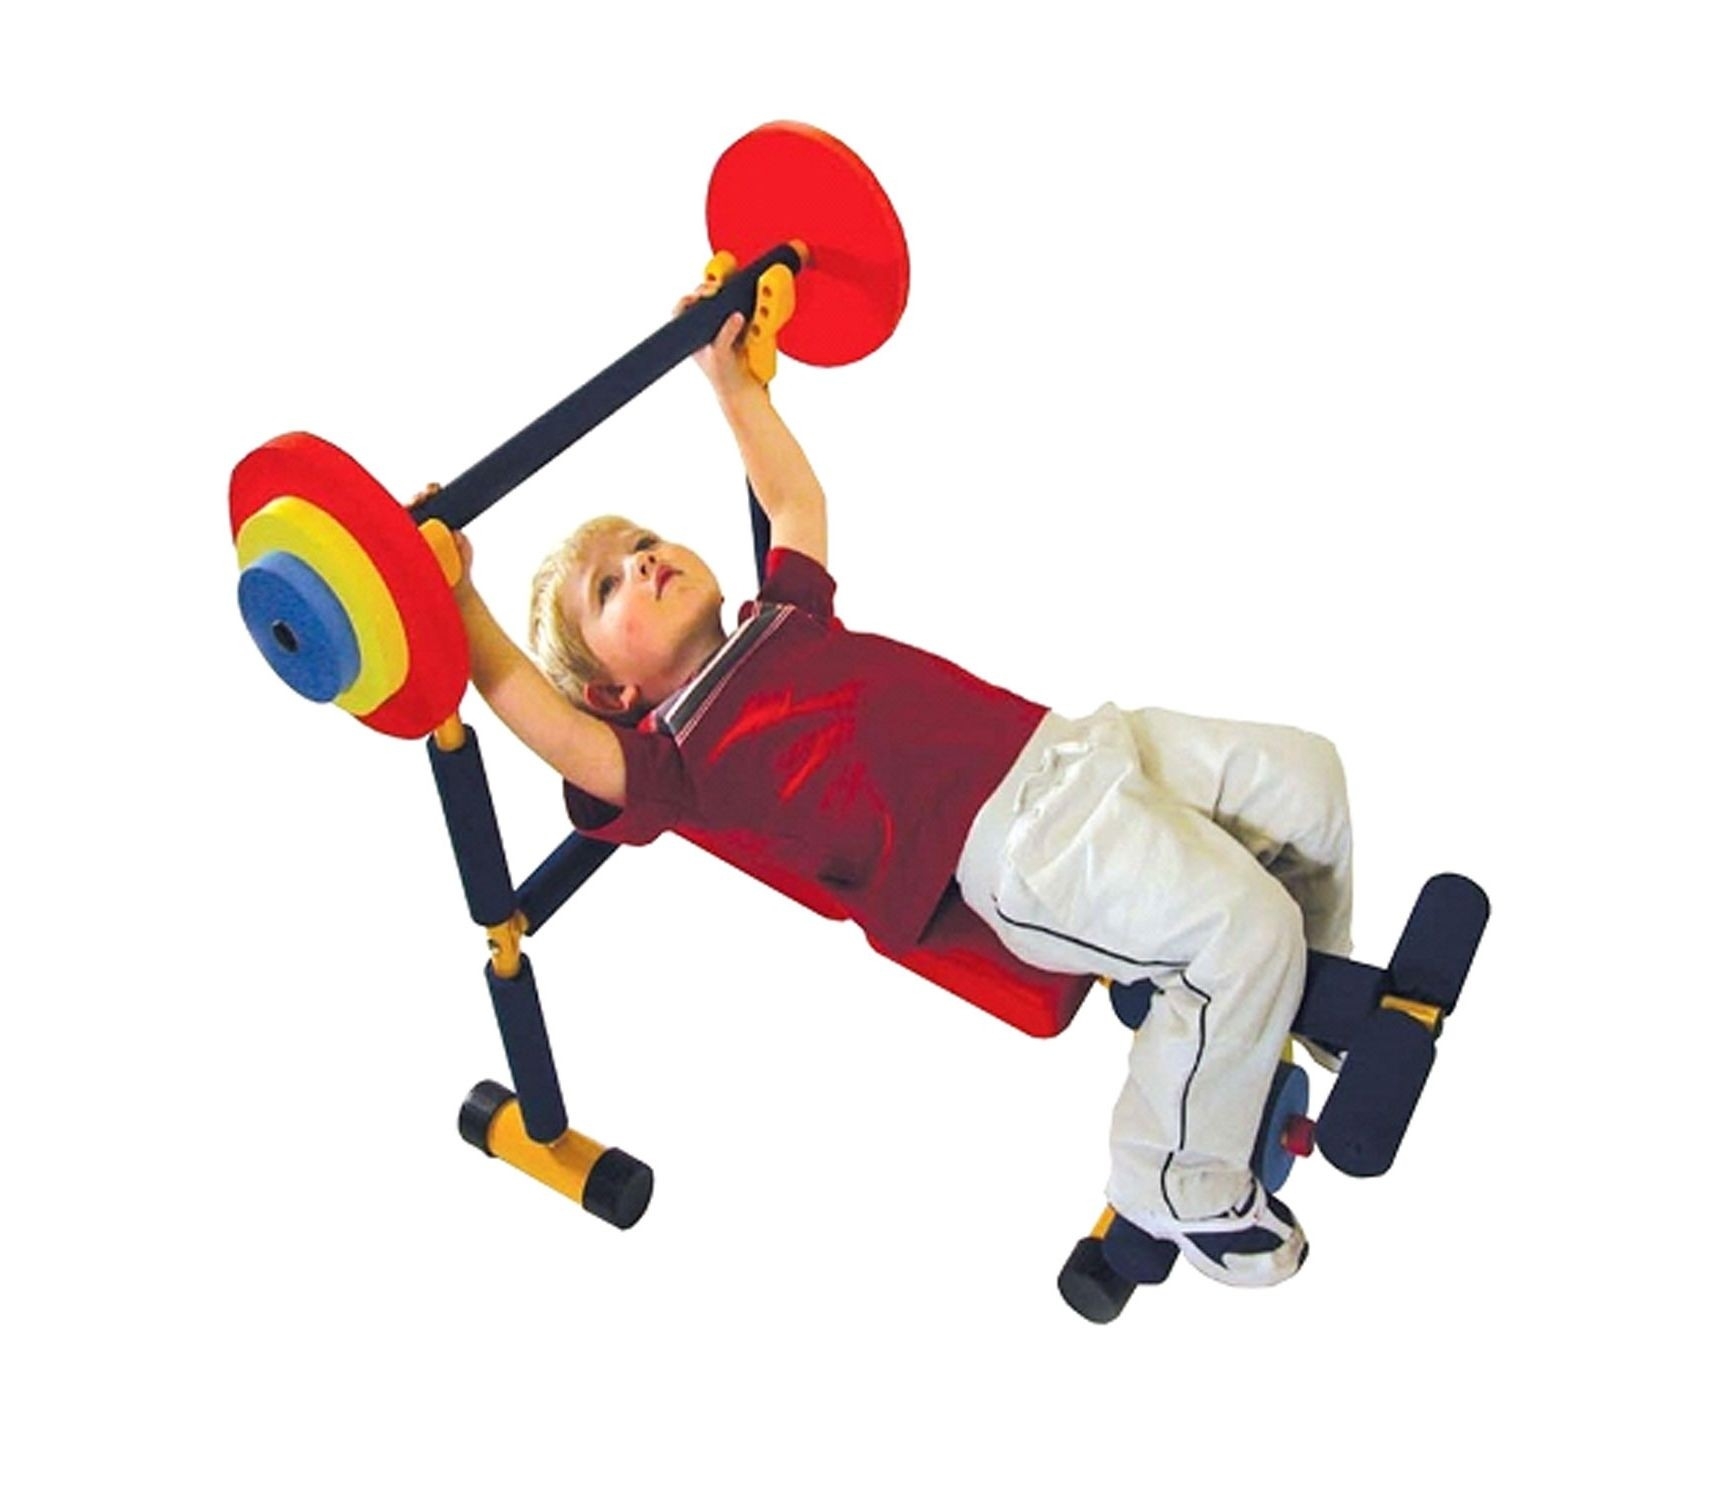 Strength-Training Exercises for Kids